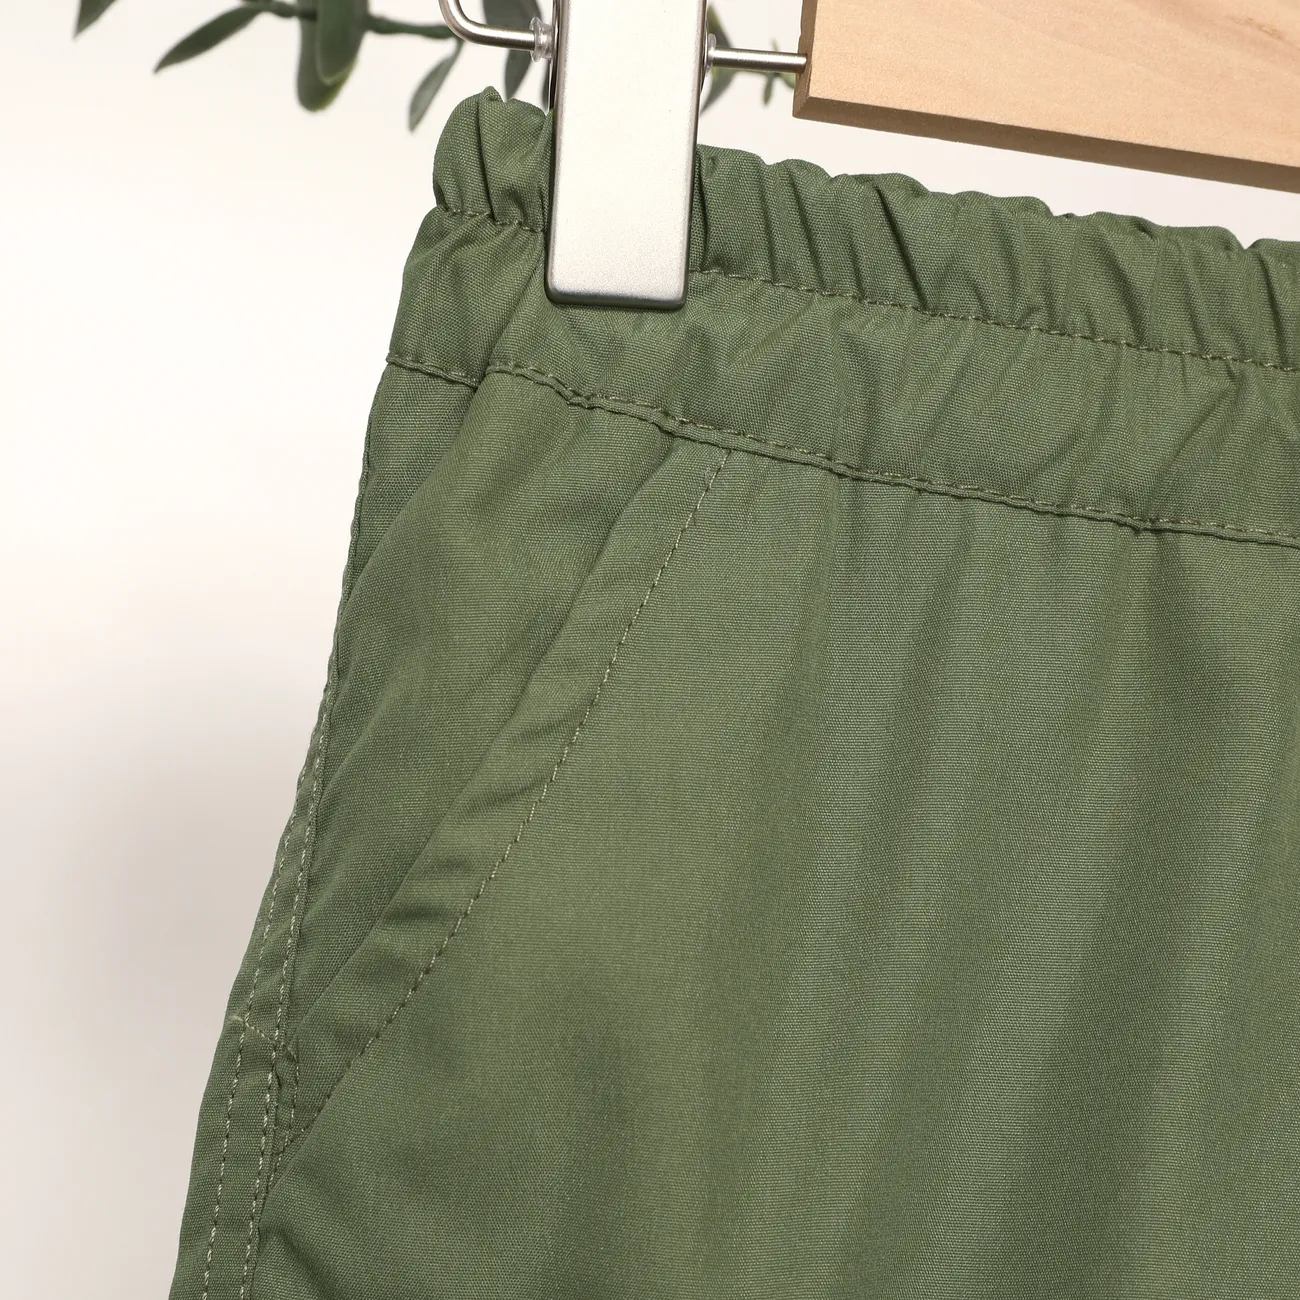 شورت كاجوال للأولاد مع جيب رقعة، طقم 1 قطعة، لون سادة، 100٪ بوليستر، قابل للغسل في الغسالة العمري الأخضر big image 1